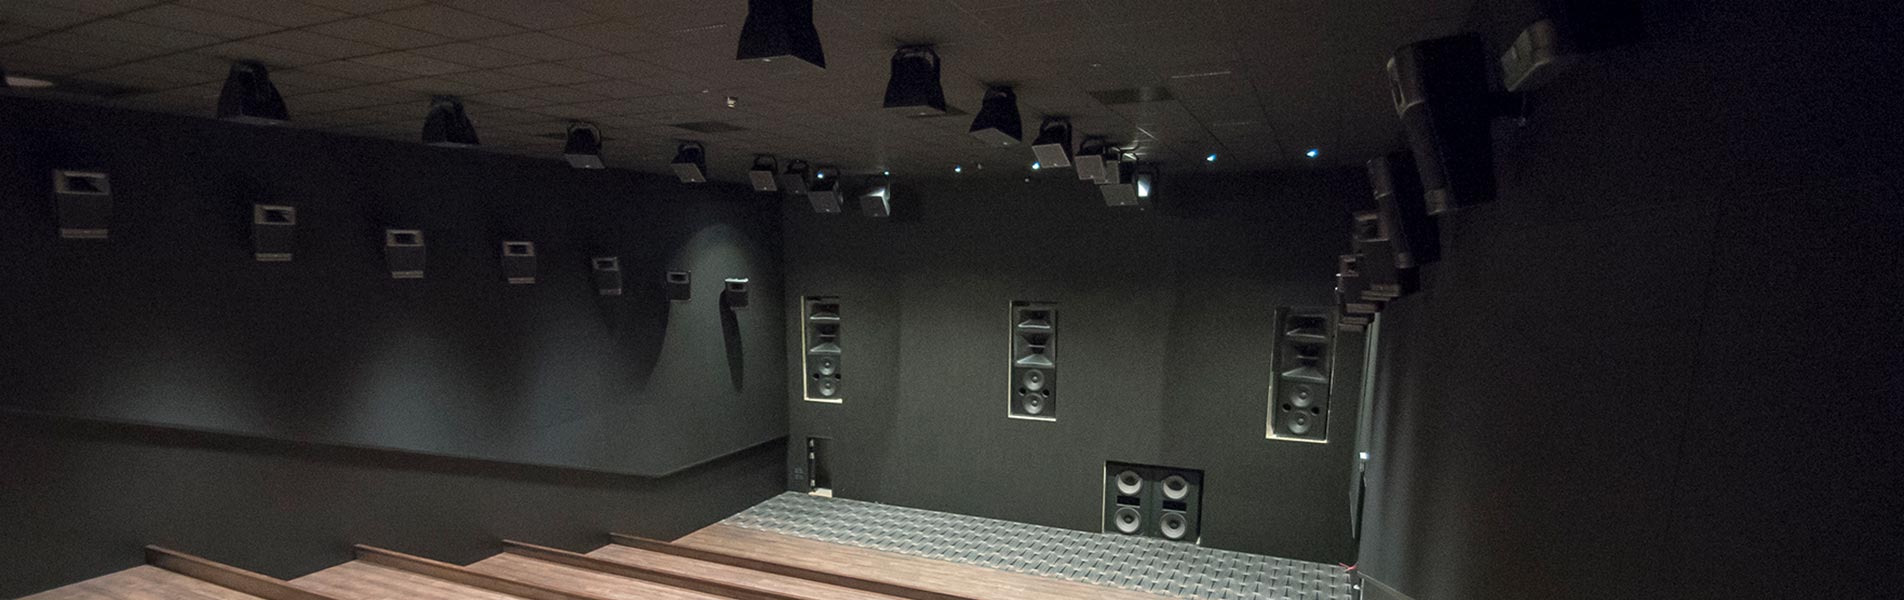 Dolby Atmos leverer et ensartet lydbillede i hele salen, så alle får den samme lydoplevelse uanset placering